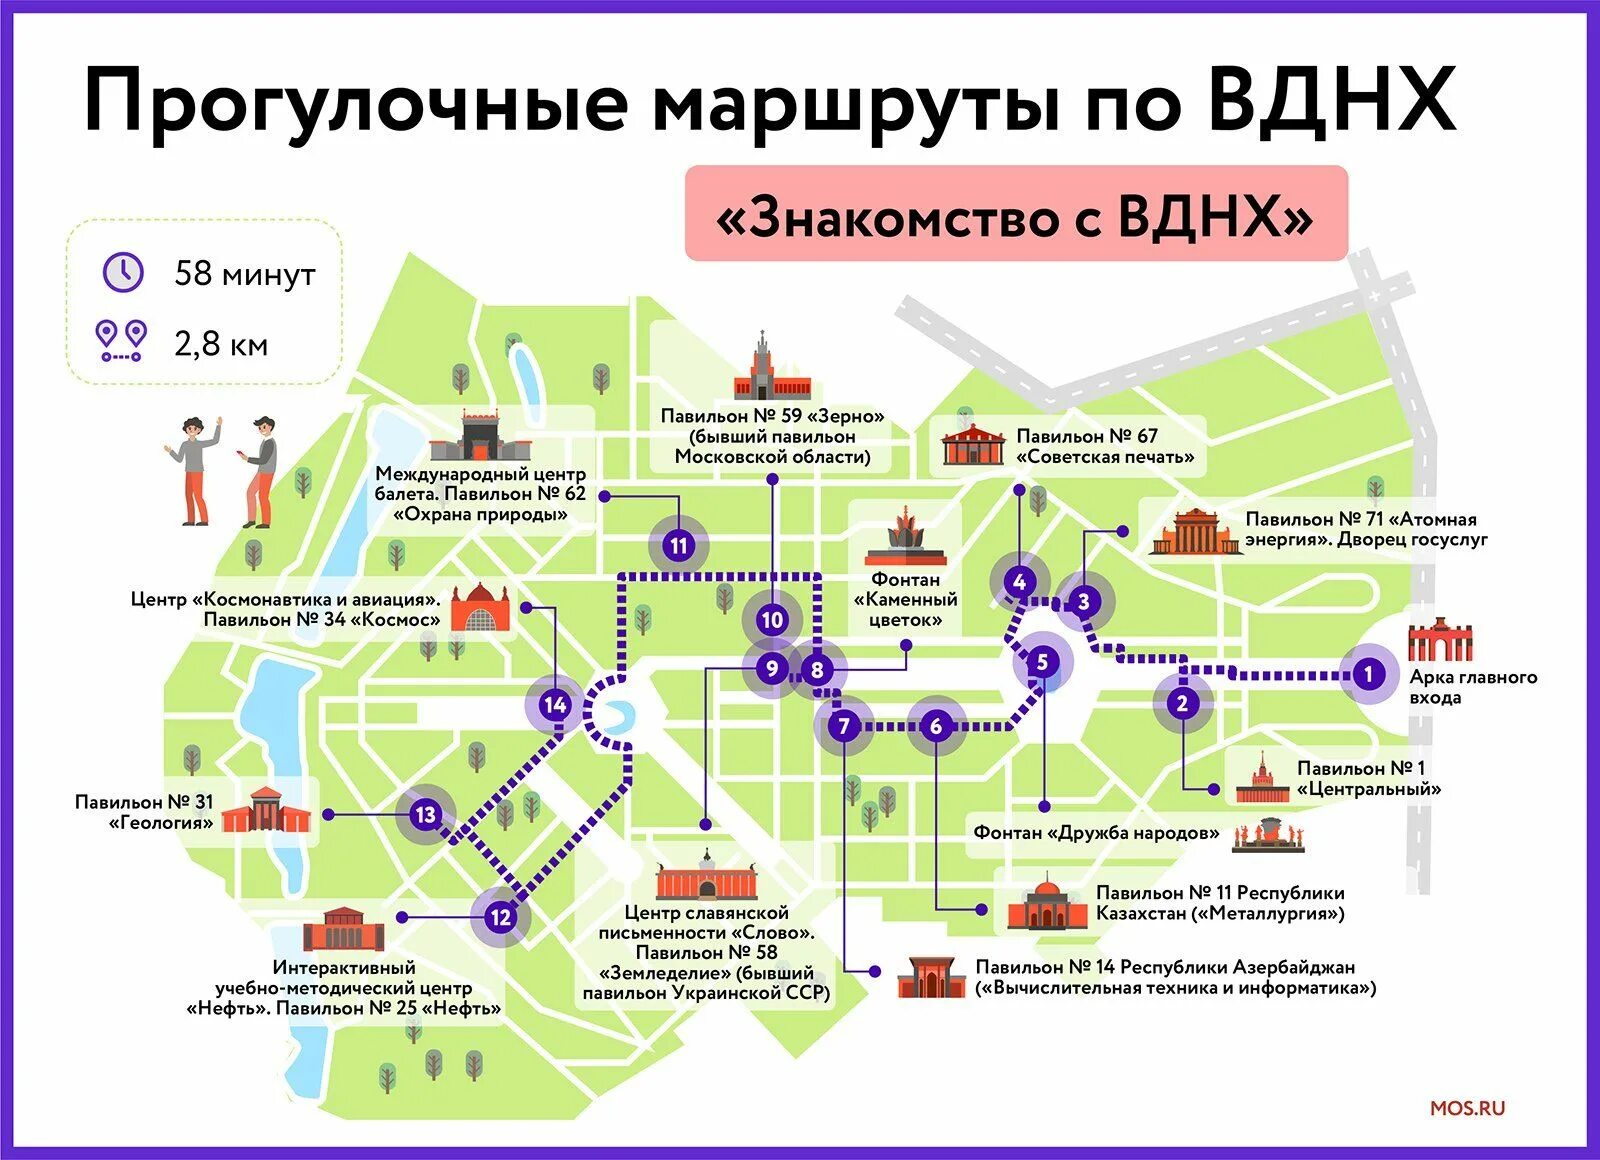 Что есть бесплатного в москве. Карта парка ВДНХ В Москве. Схема ВДНХ В Москве. Территория парка ВДНХ. Прогулочные маршруты по ВДНХ.